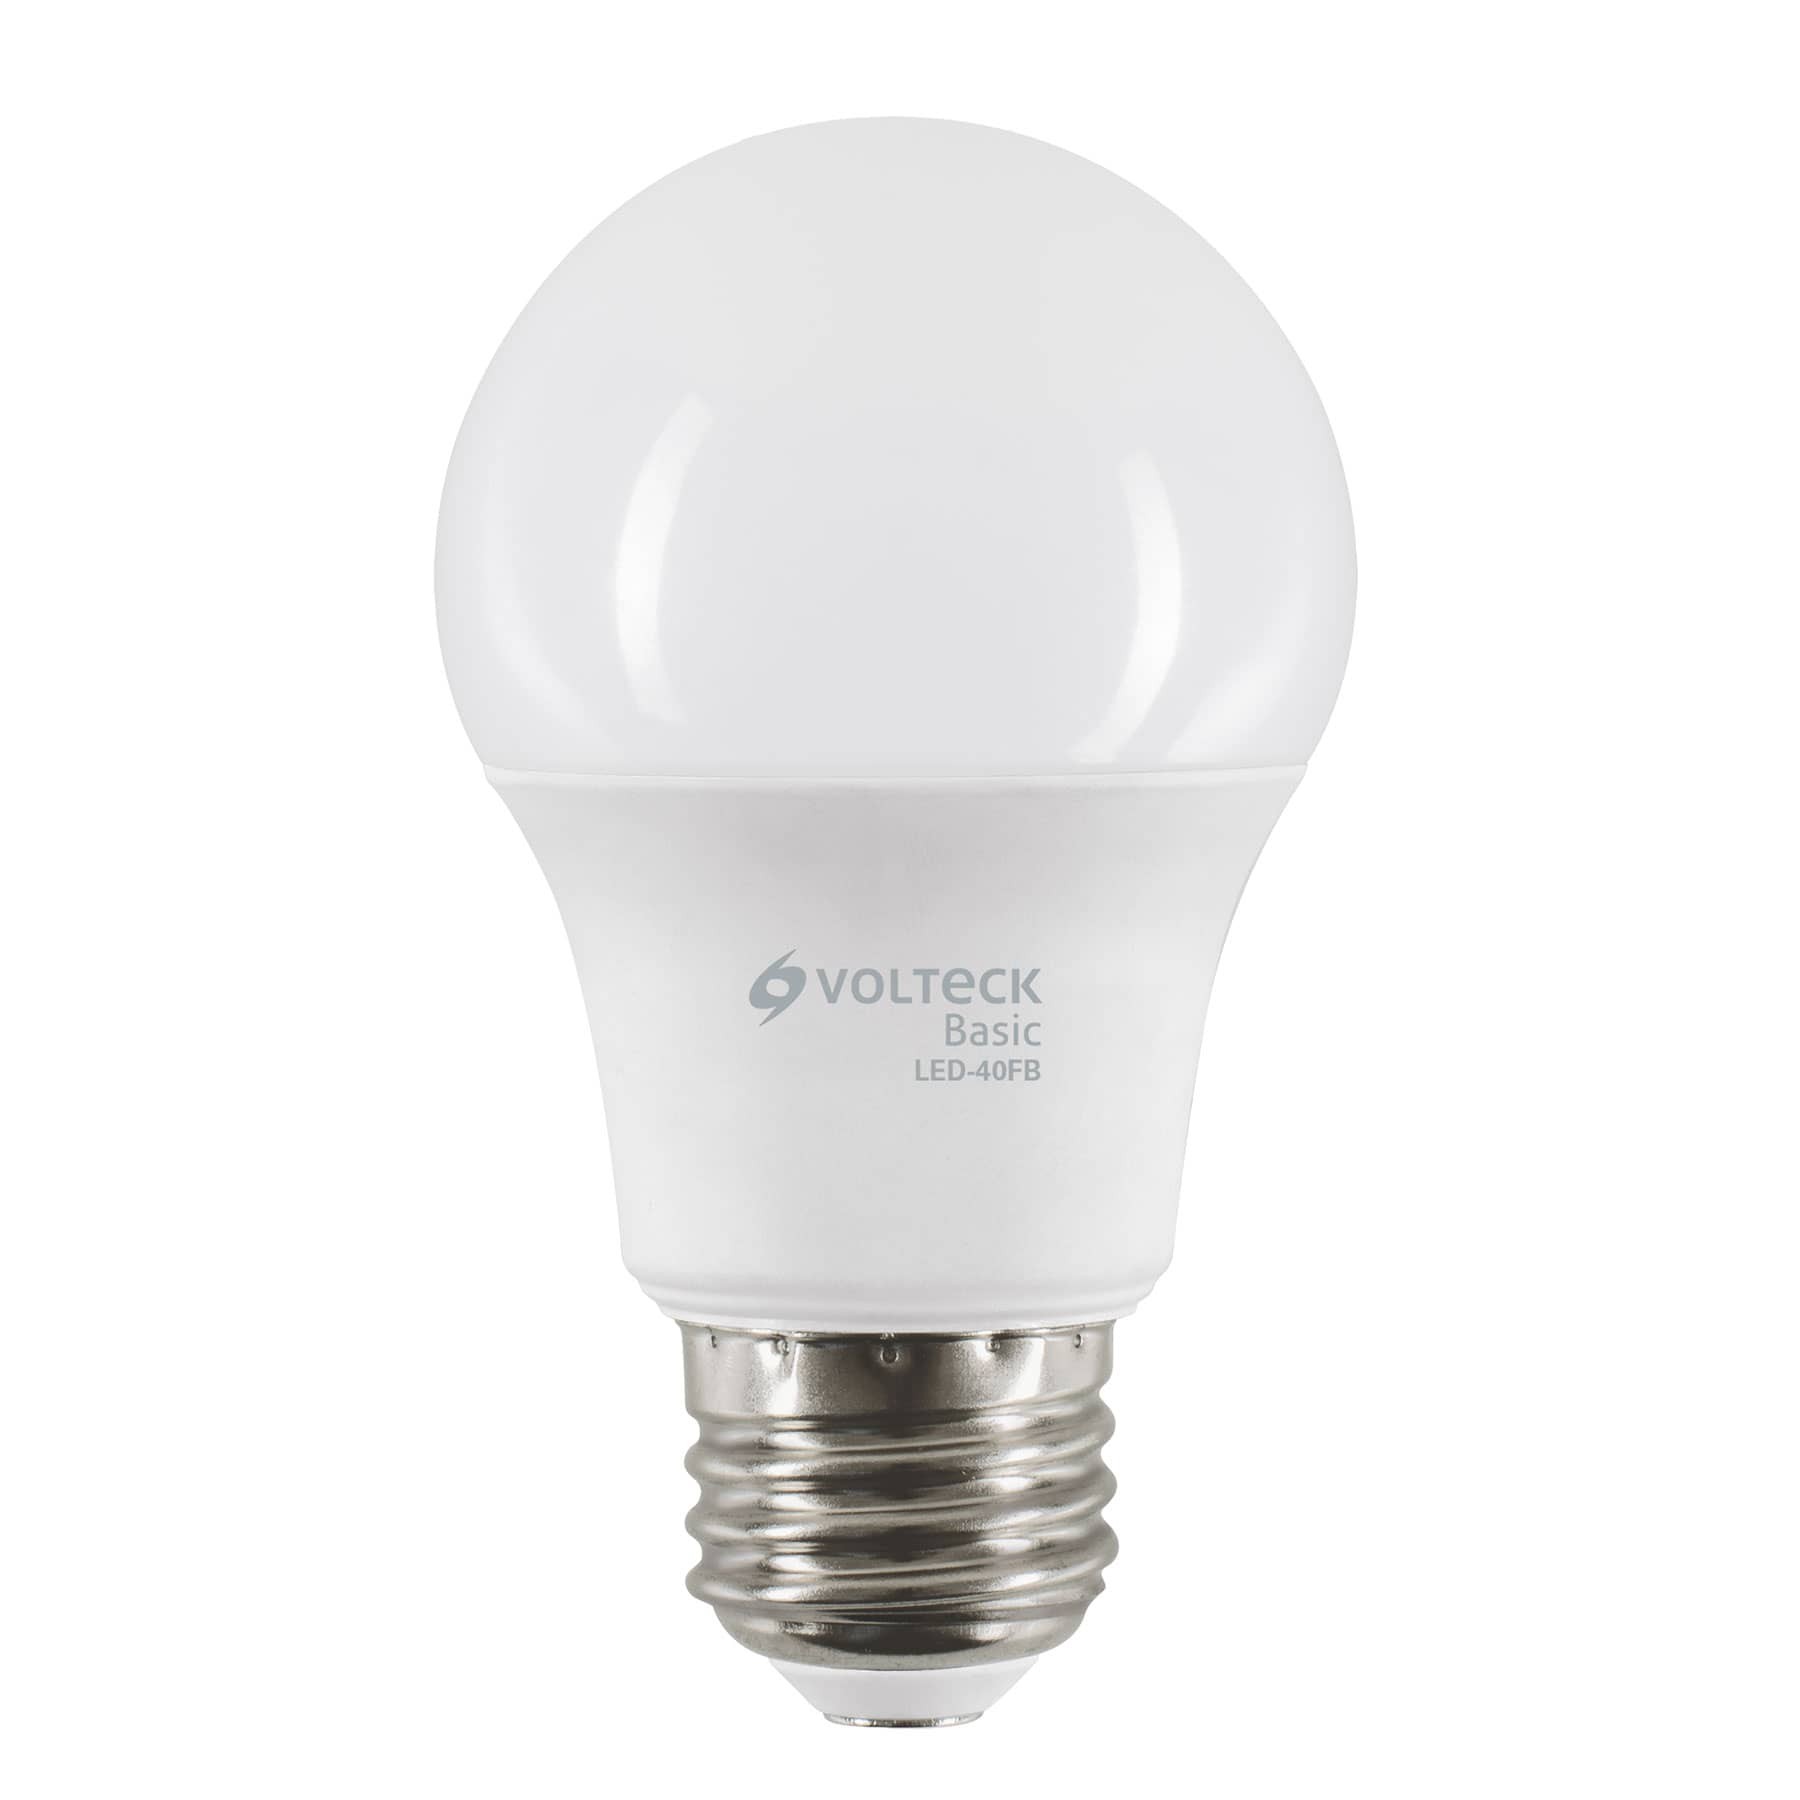 Lámparas de LED tipo bulbo